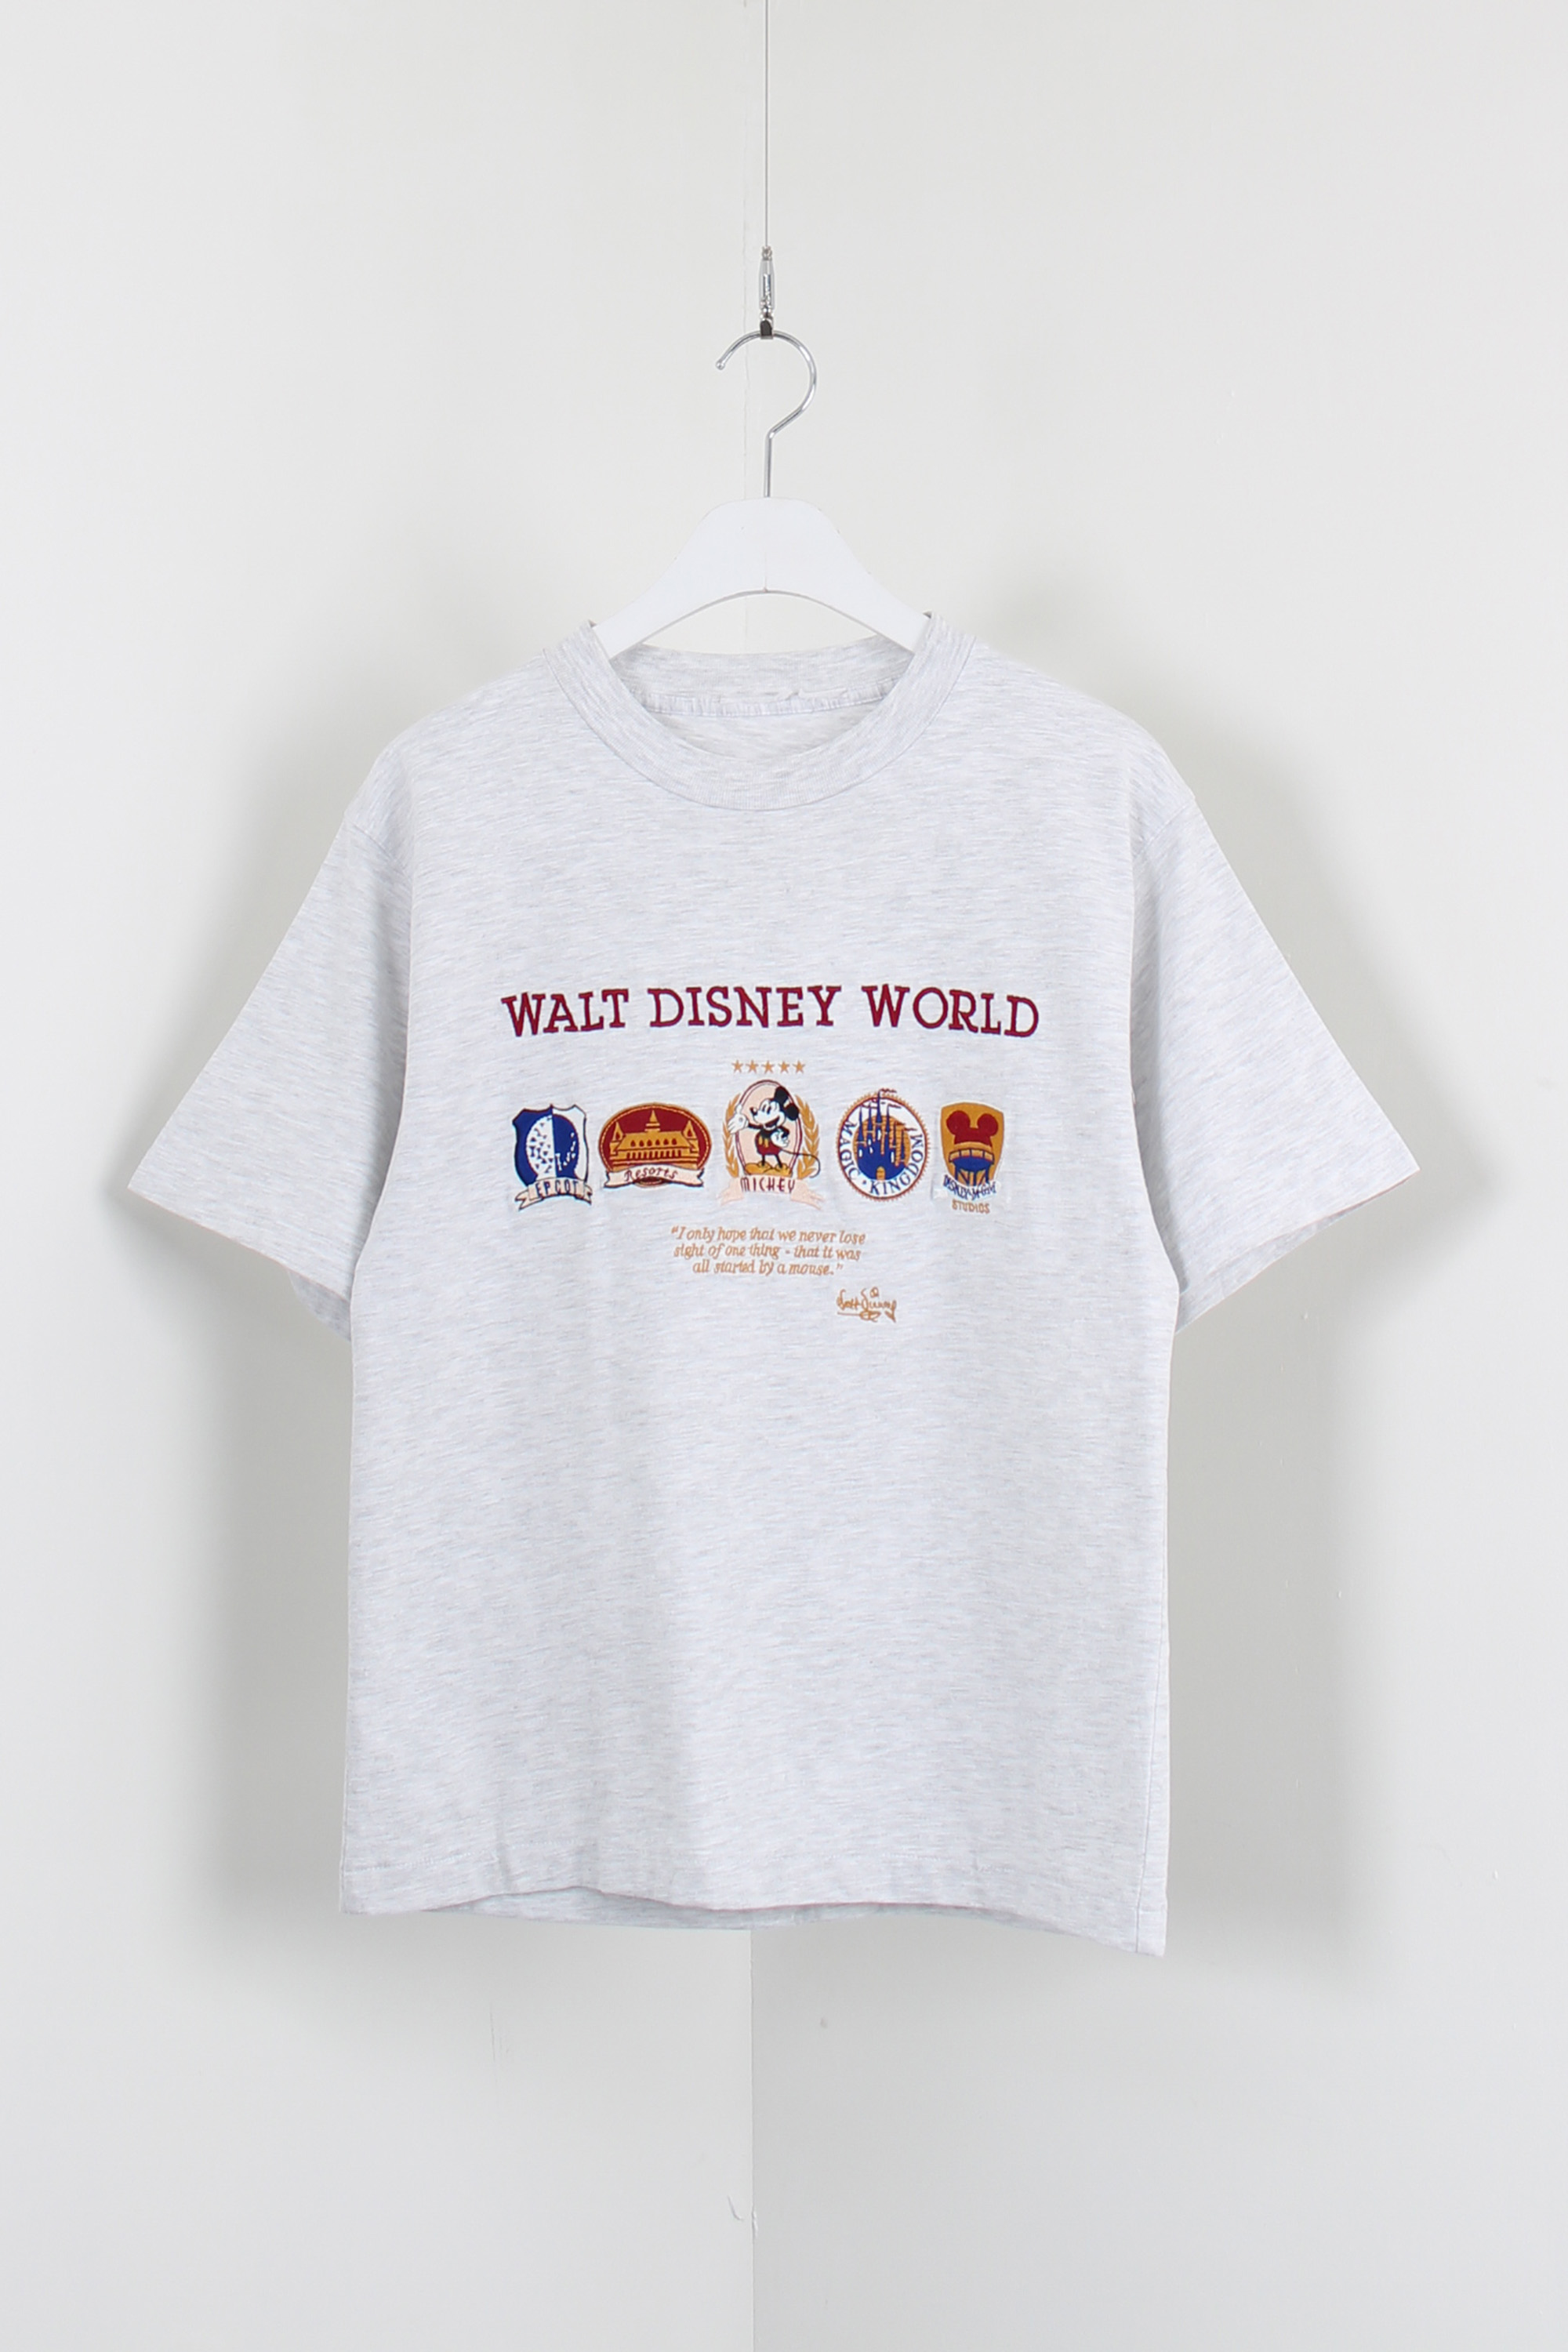 WALT DISNEY WORLD t- shirt